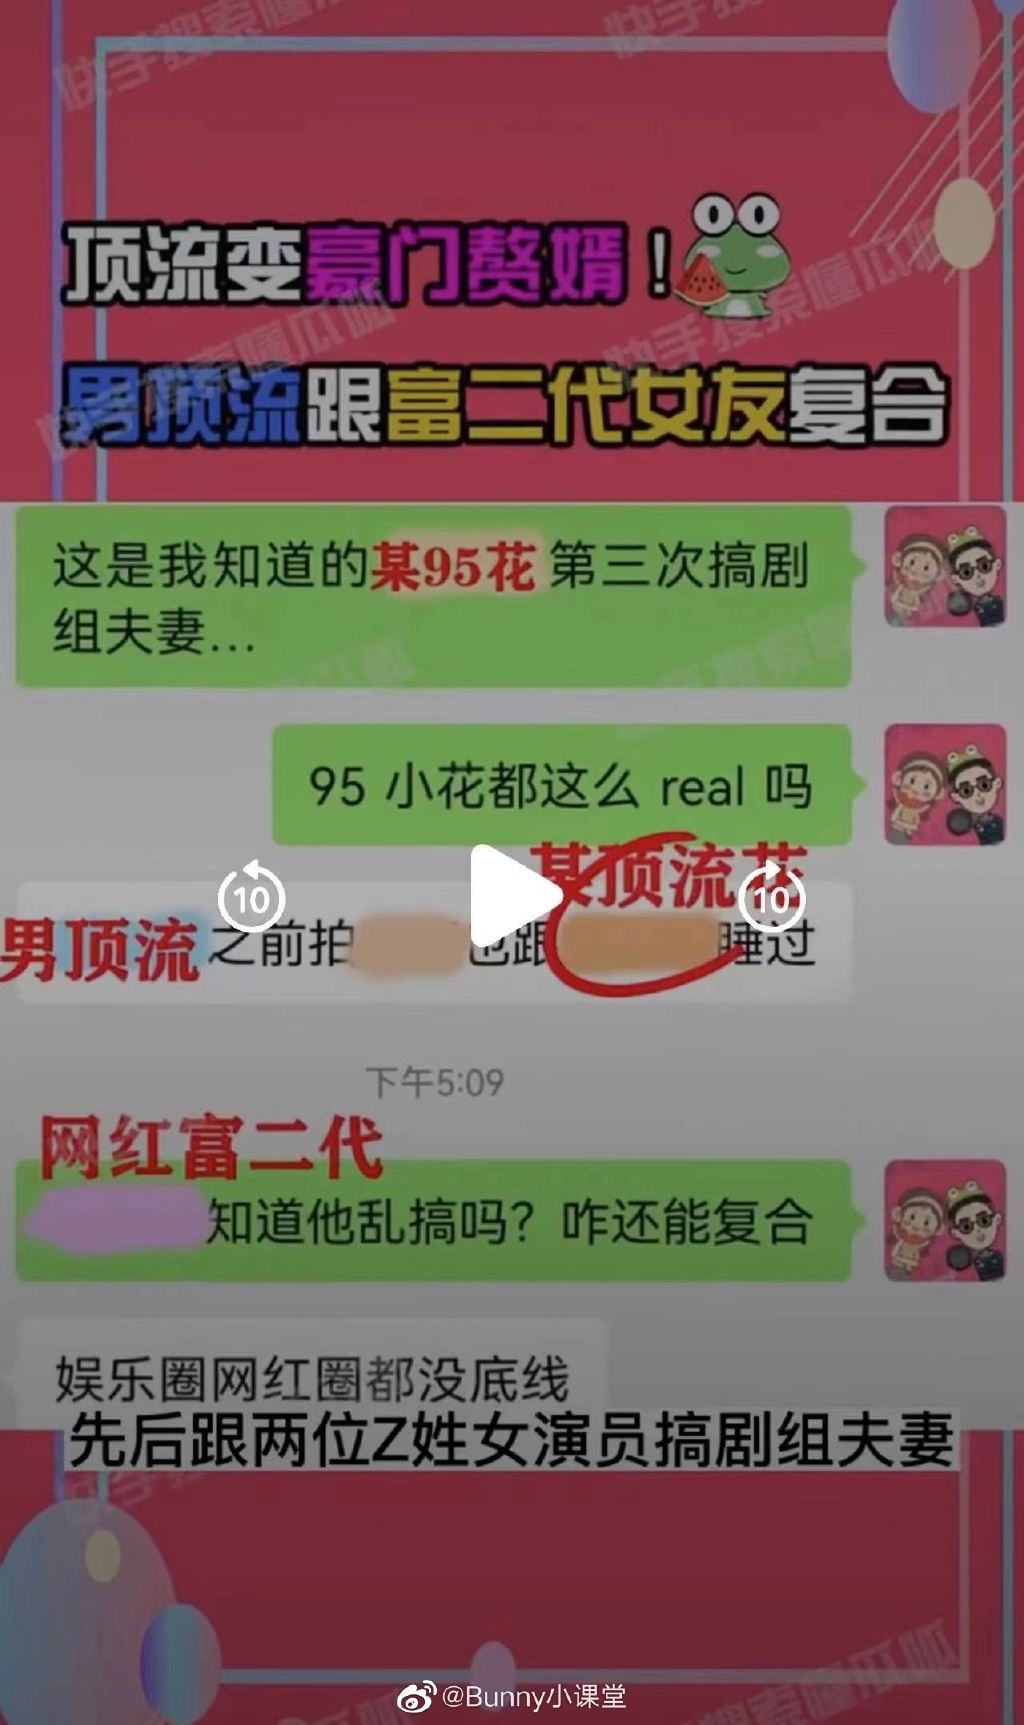 网疯传「世纪复合罗志祥」　周扬青晒影片回应了真相经过持续报道